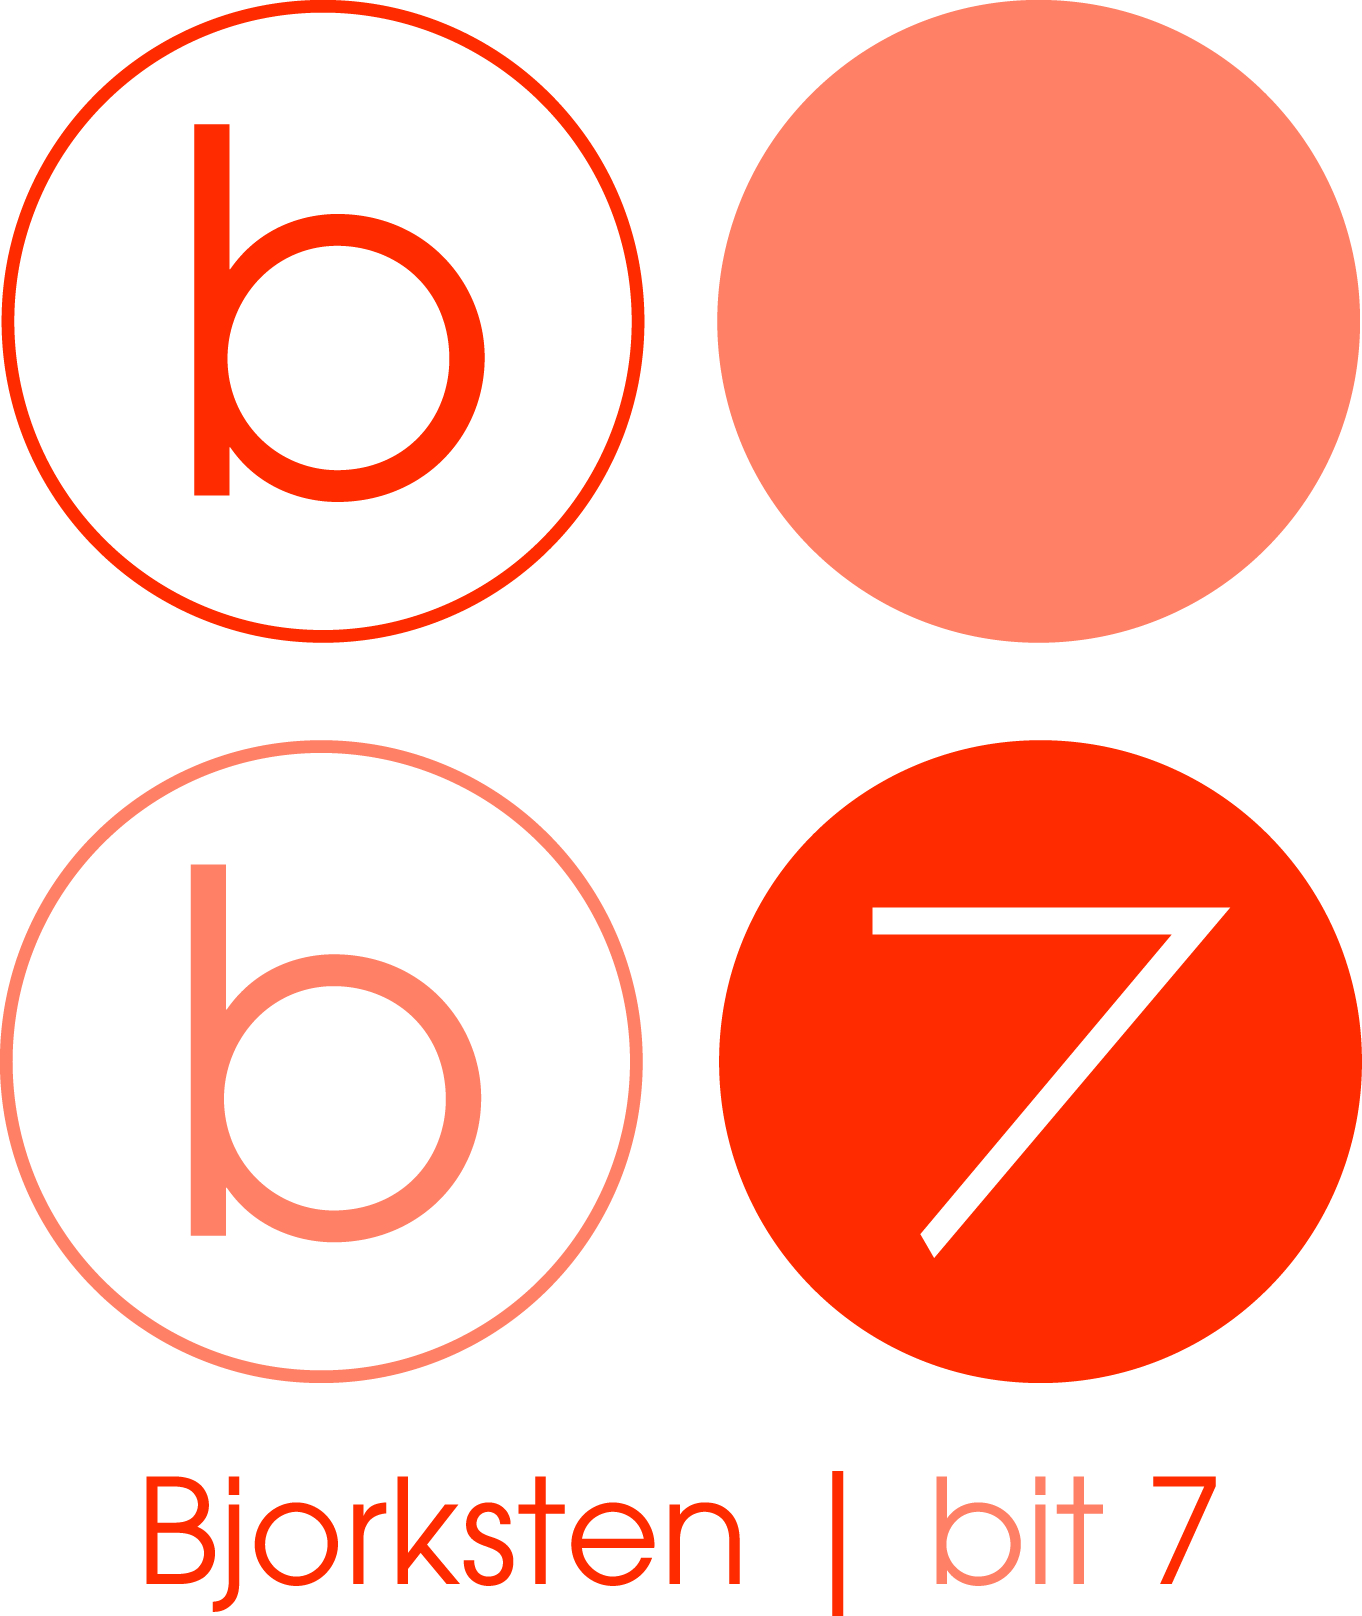 Bjorksten | bit 7 Logo